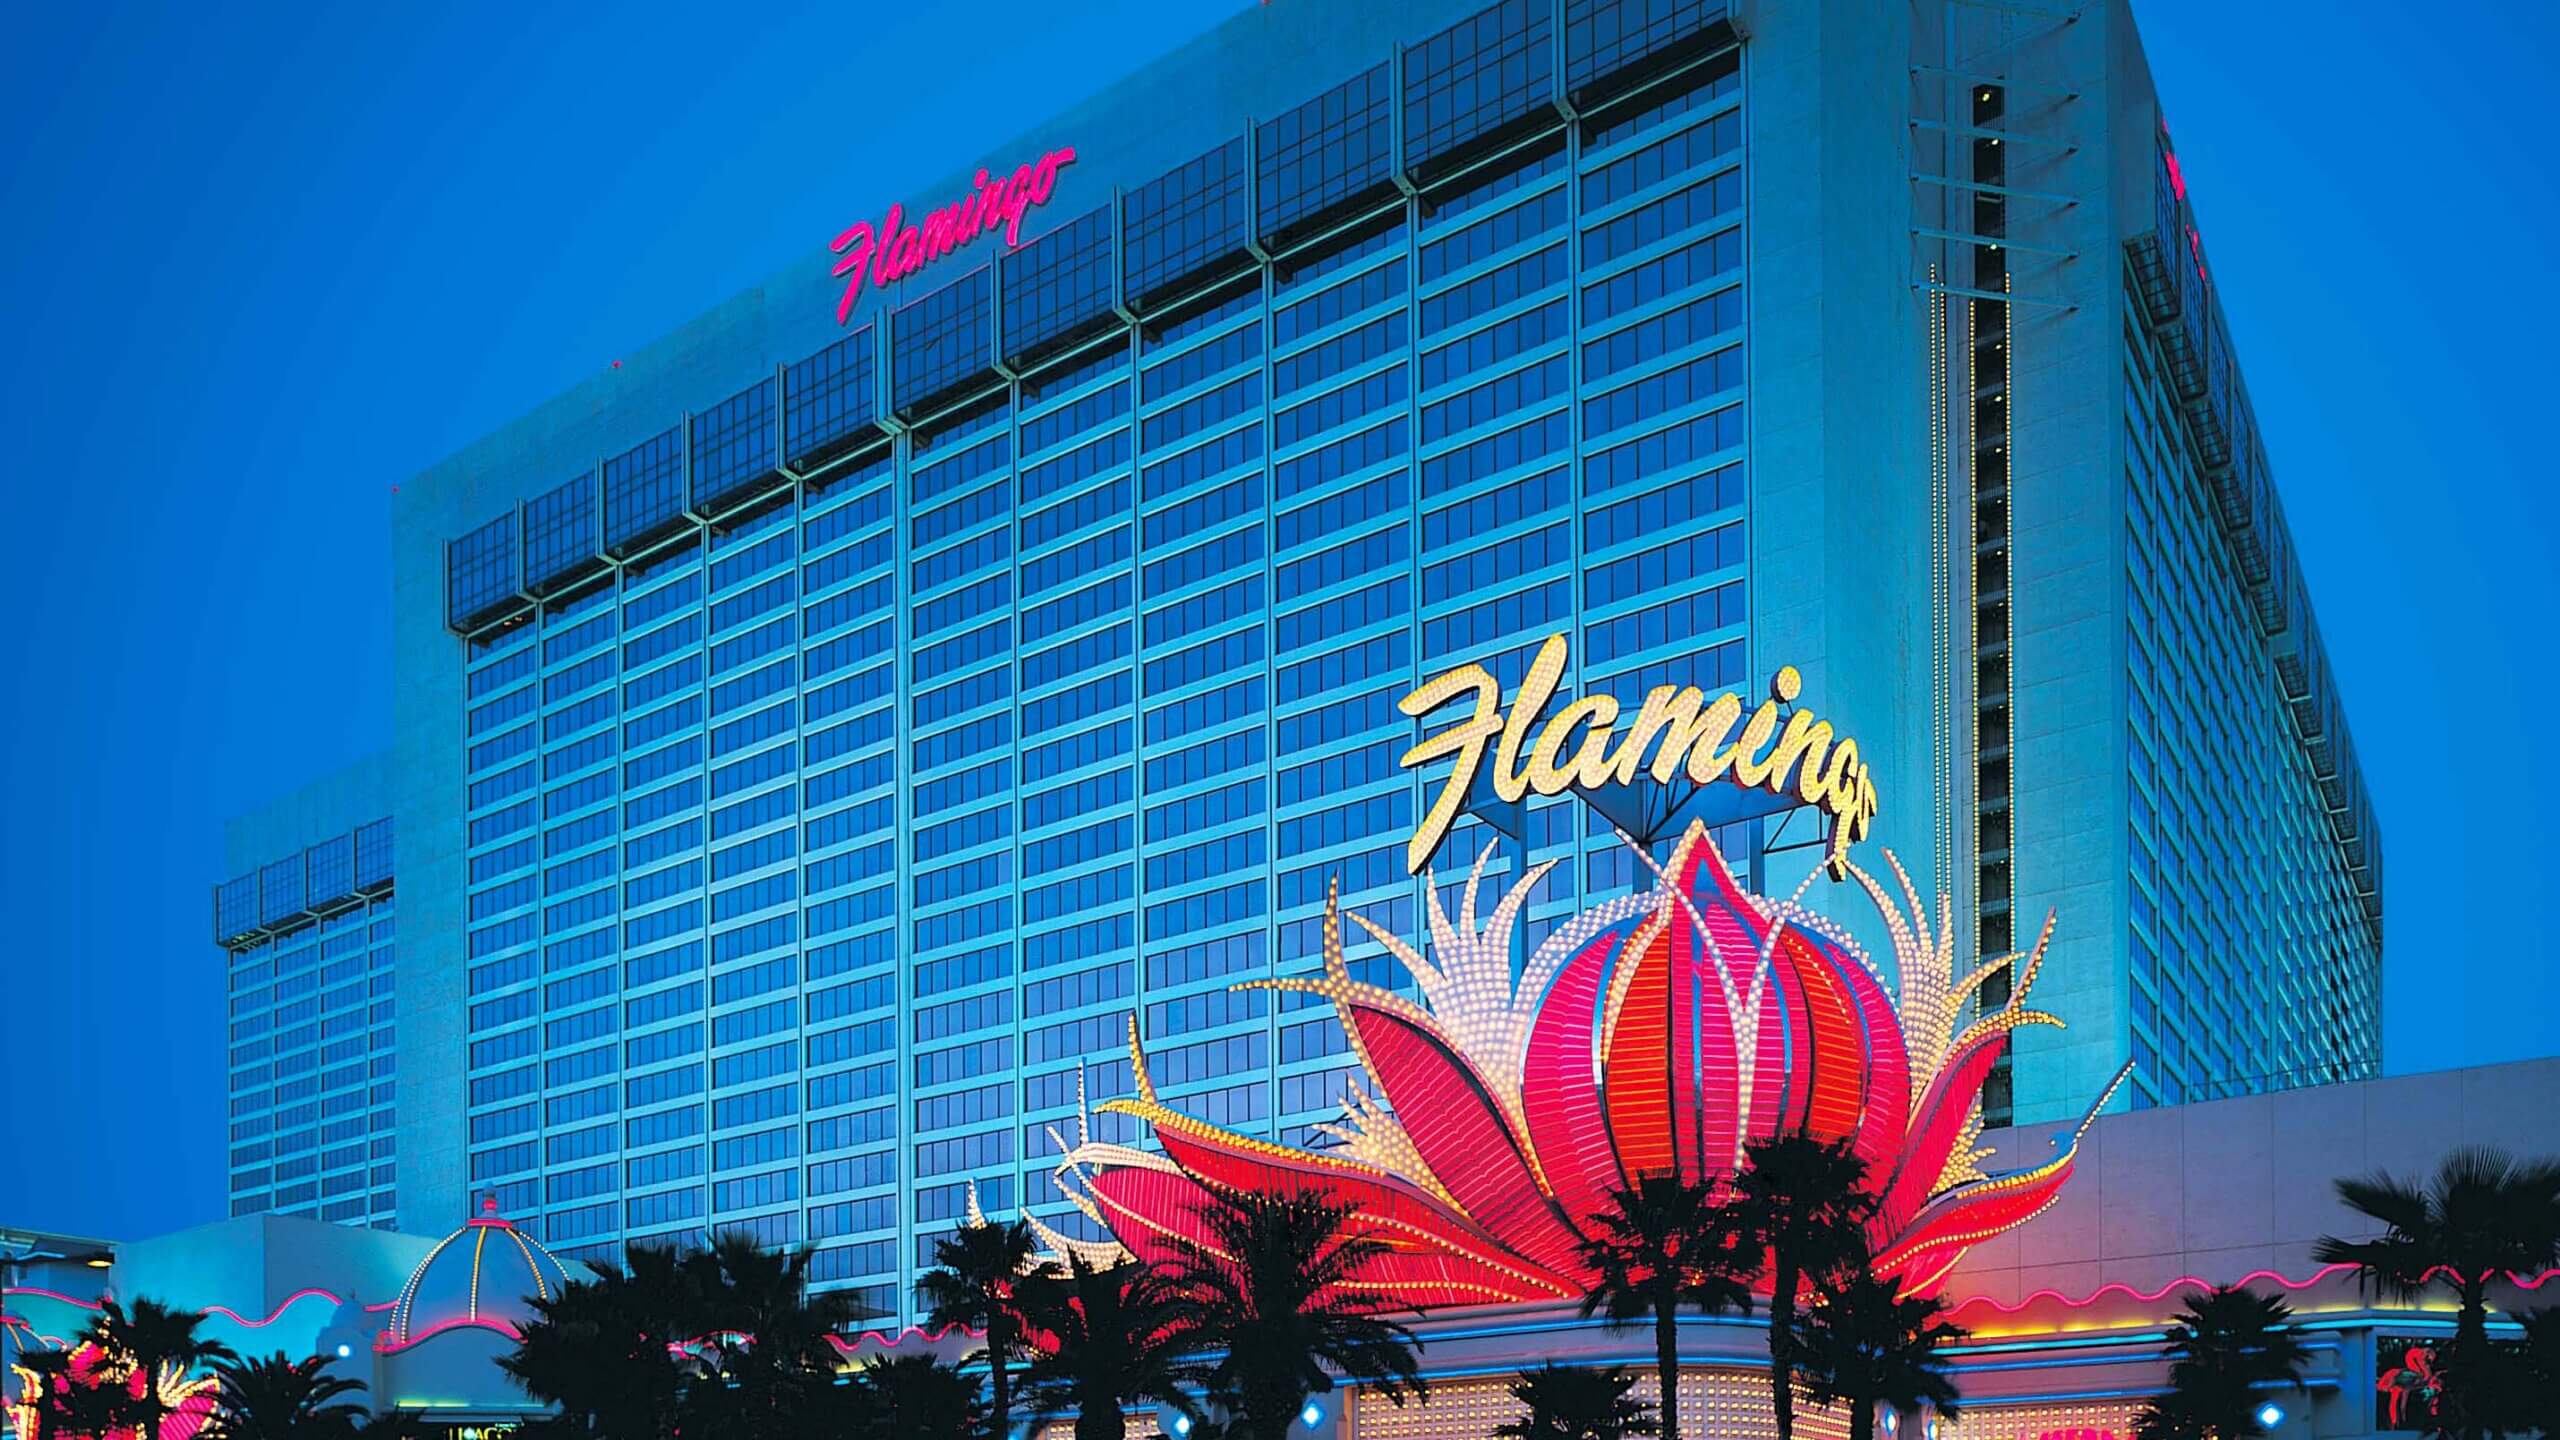 Flamingo Restaurants  Las Vegas: The Complete Guide